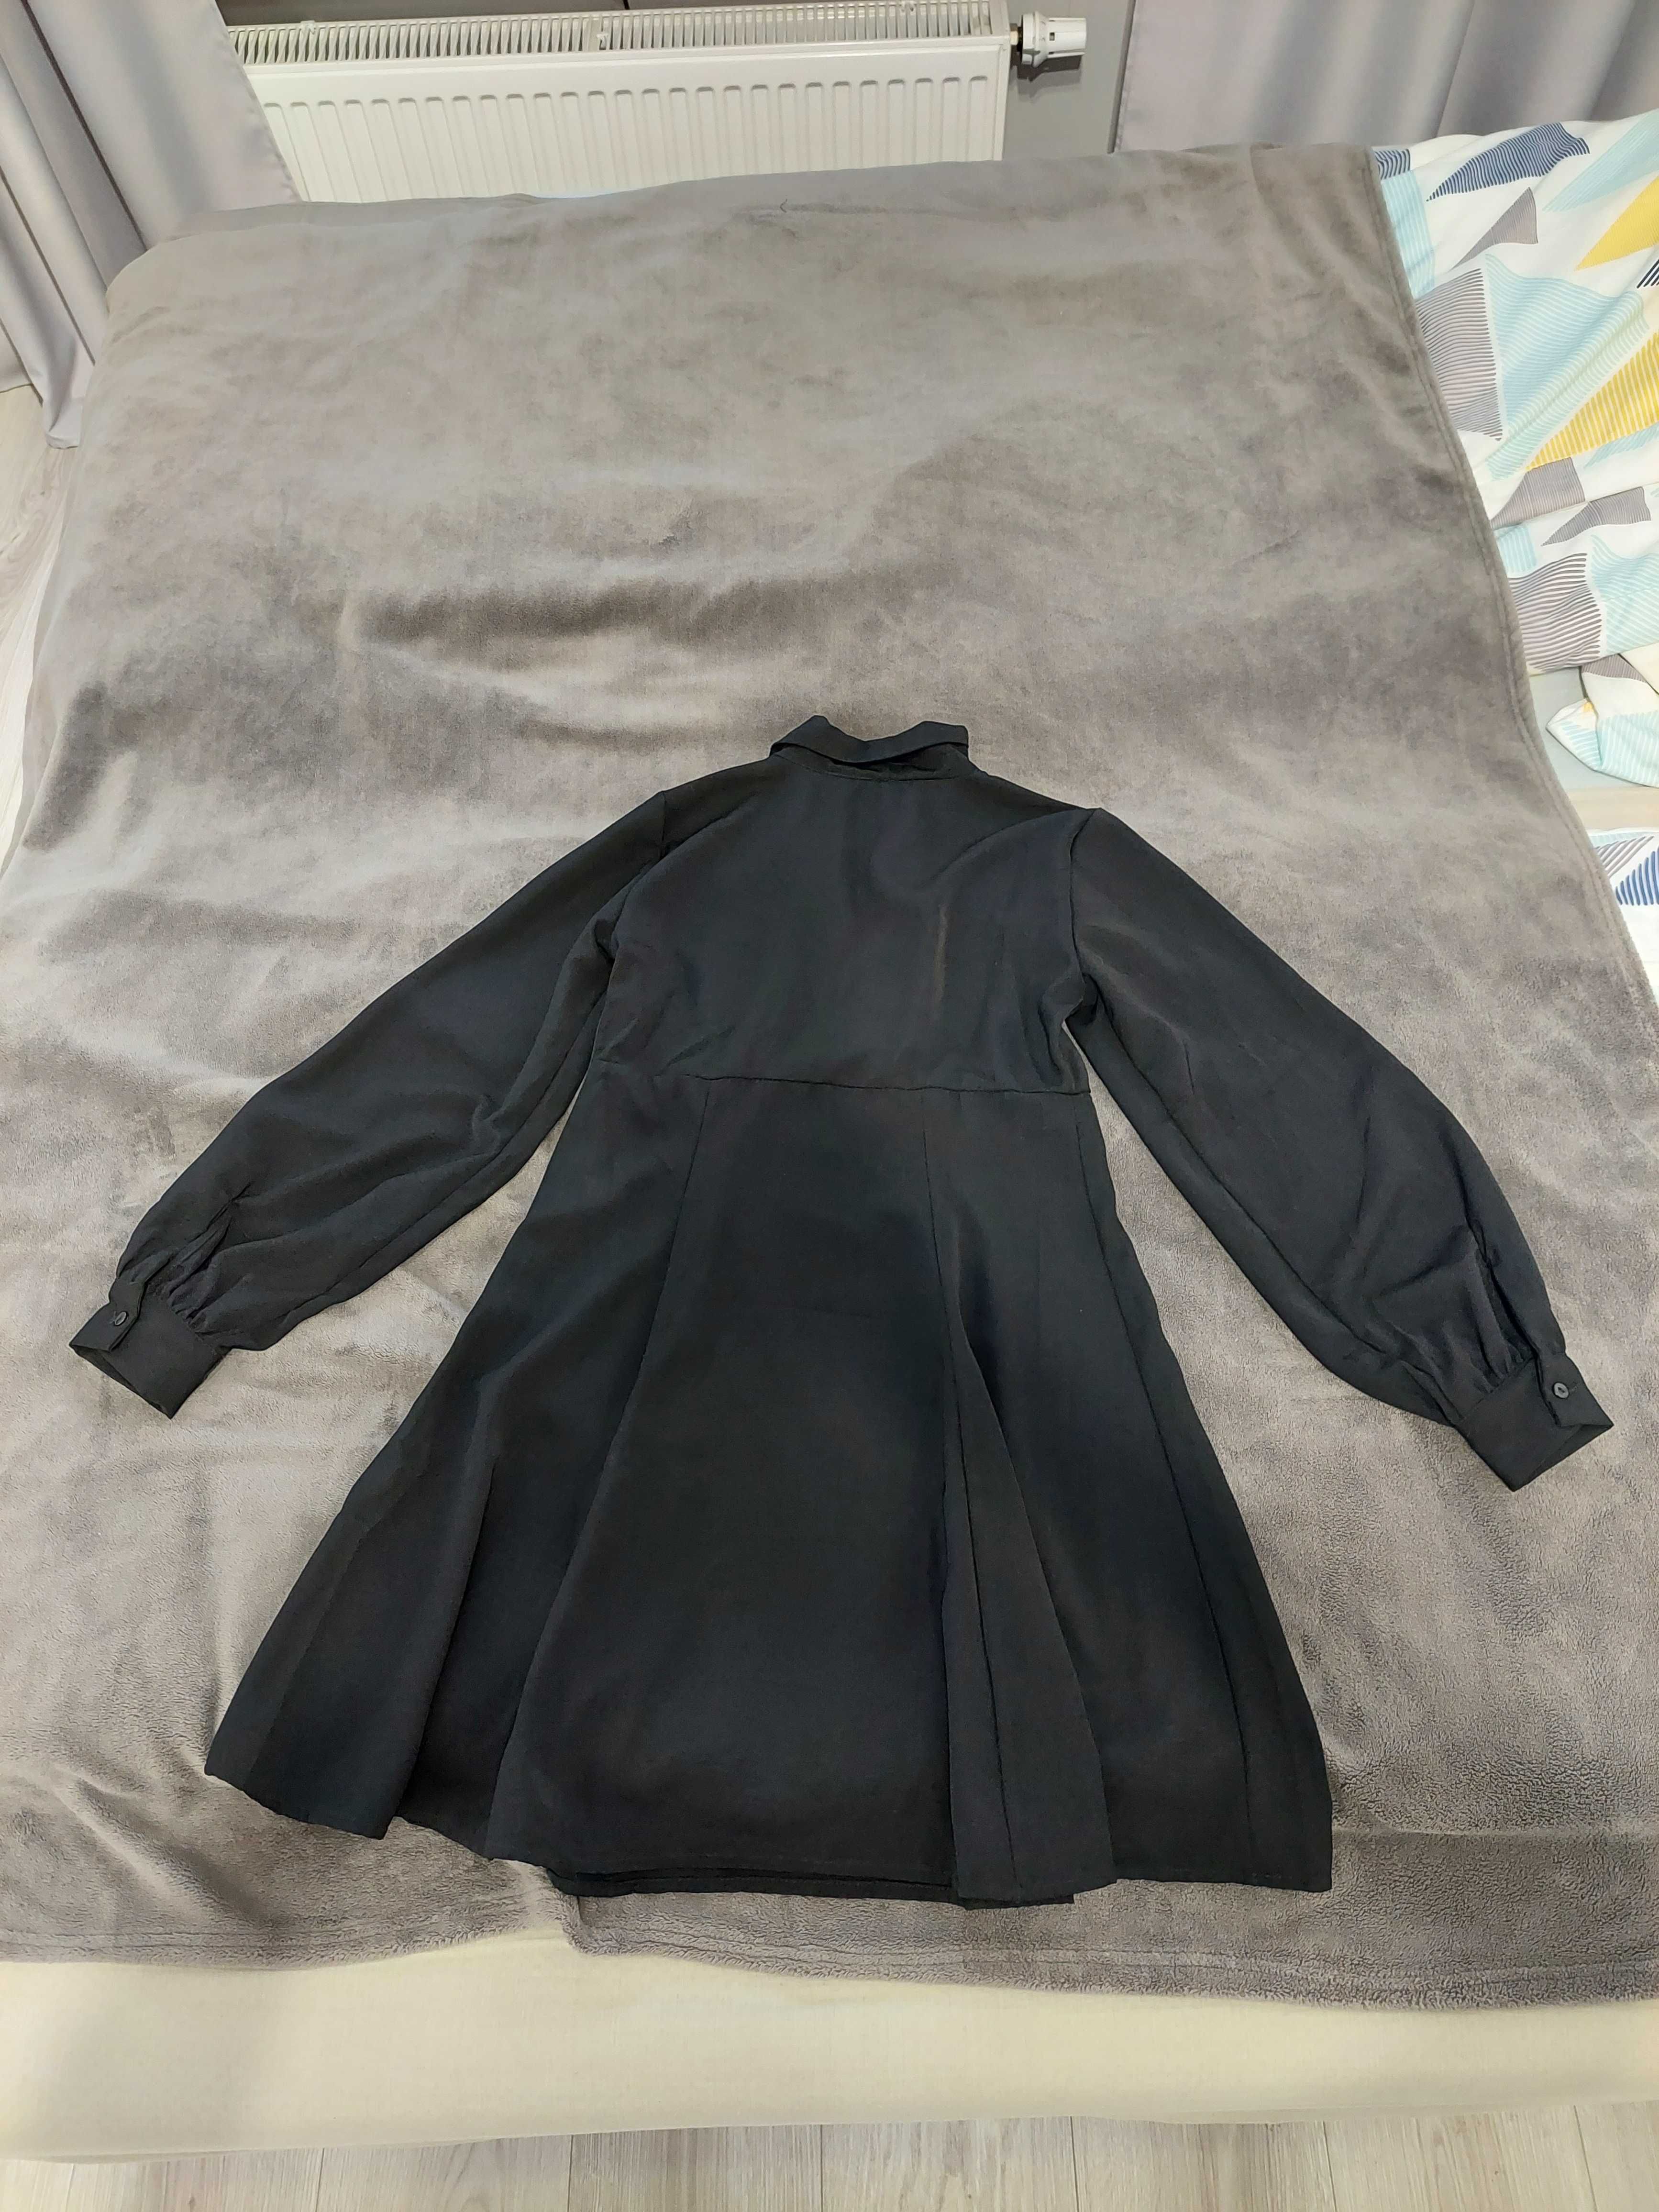 Czarna sukienka rozmiar S